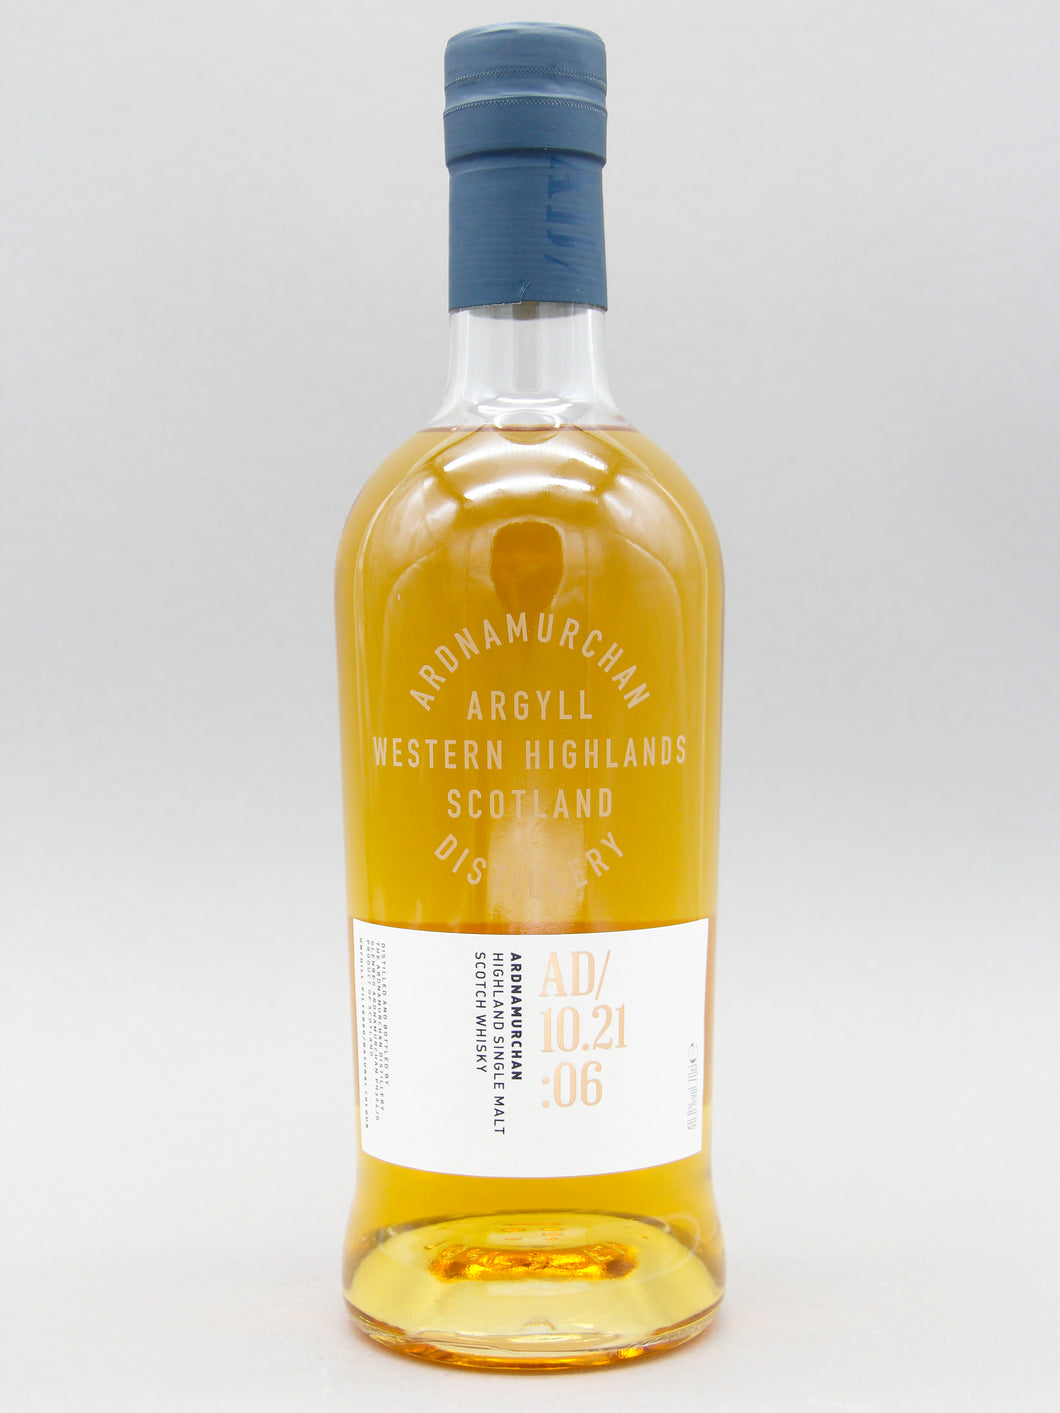 Ardnamurchan 10.21:06, Highland Single Malt Scotch Whisky (46.8%, 70cl)